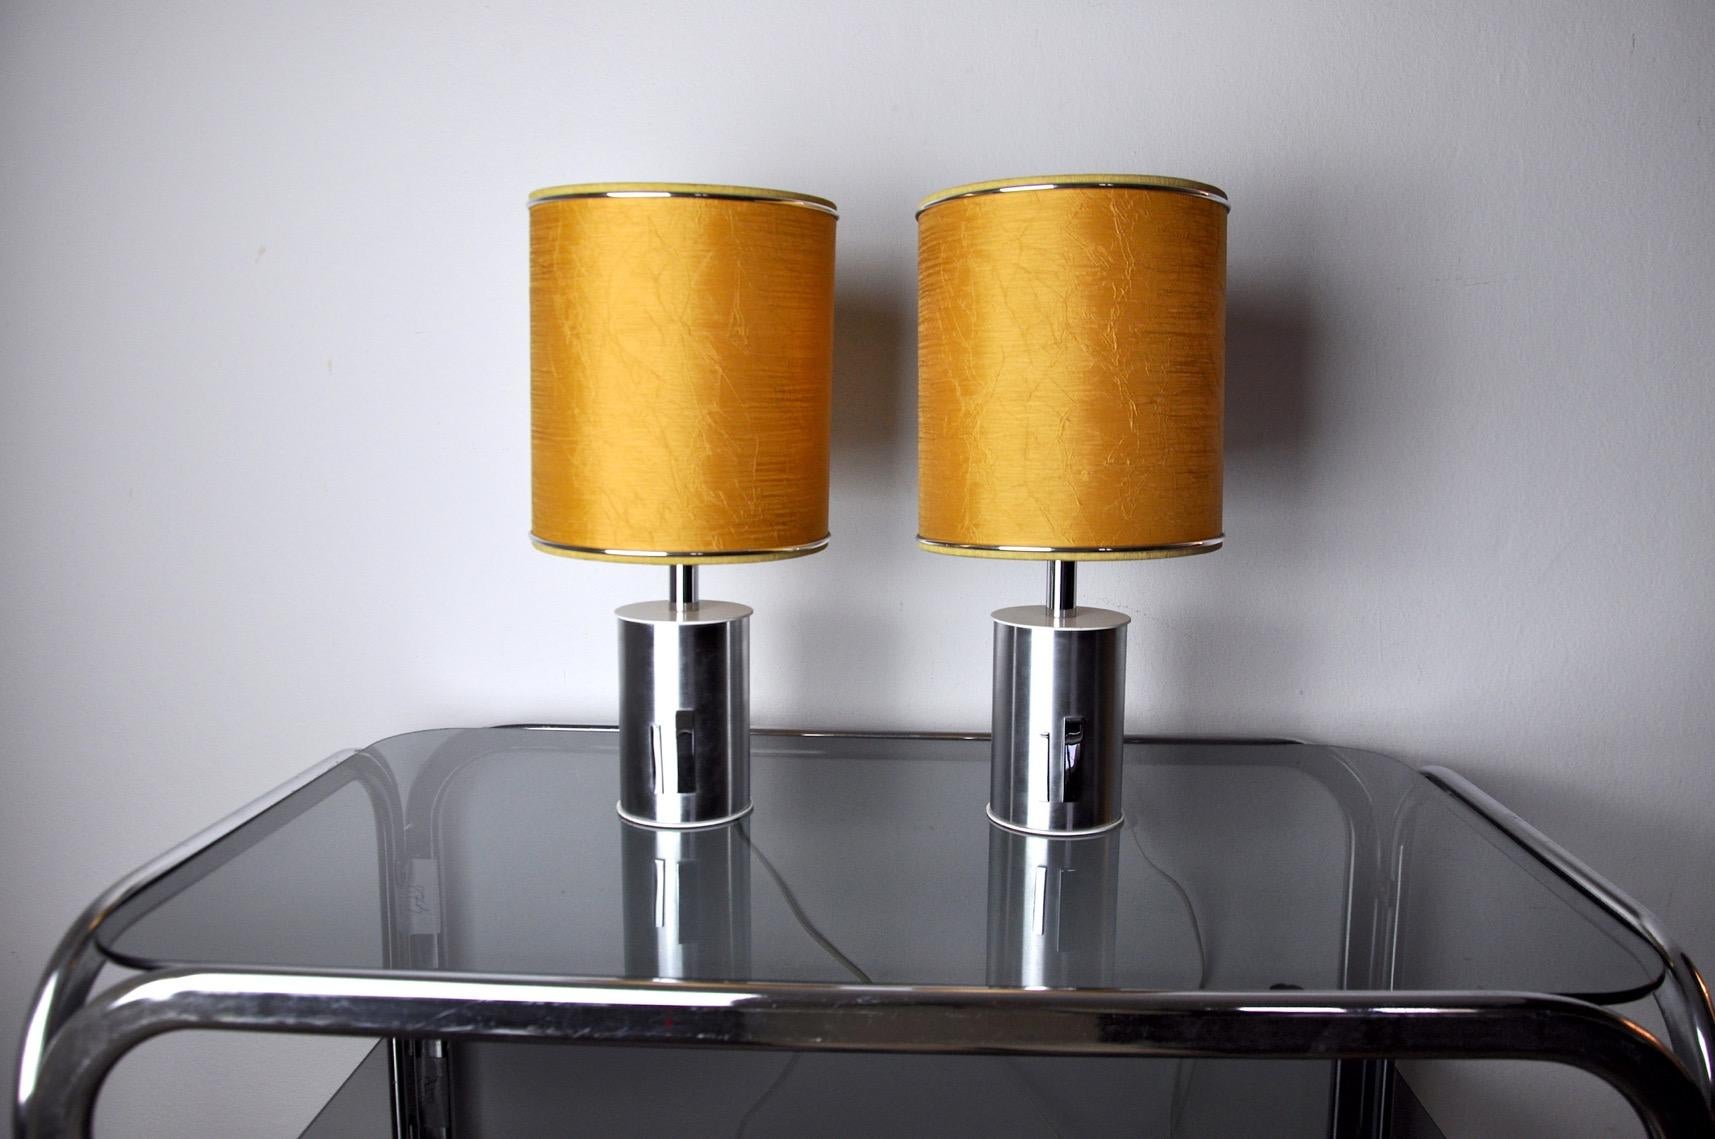 Sehr schönes Paar futuristischer Lampen, entworfen und hergestellt von marca sl in Spanien in den 1970er Jahren. Struktur aus Metall, Lampenschirm aus goldenem Leinen. Einzigartiges Objekt, das wunderbar leuchtet und Ihrem Interieur eine echte